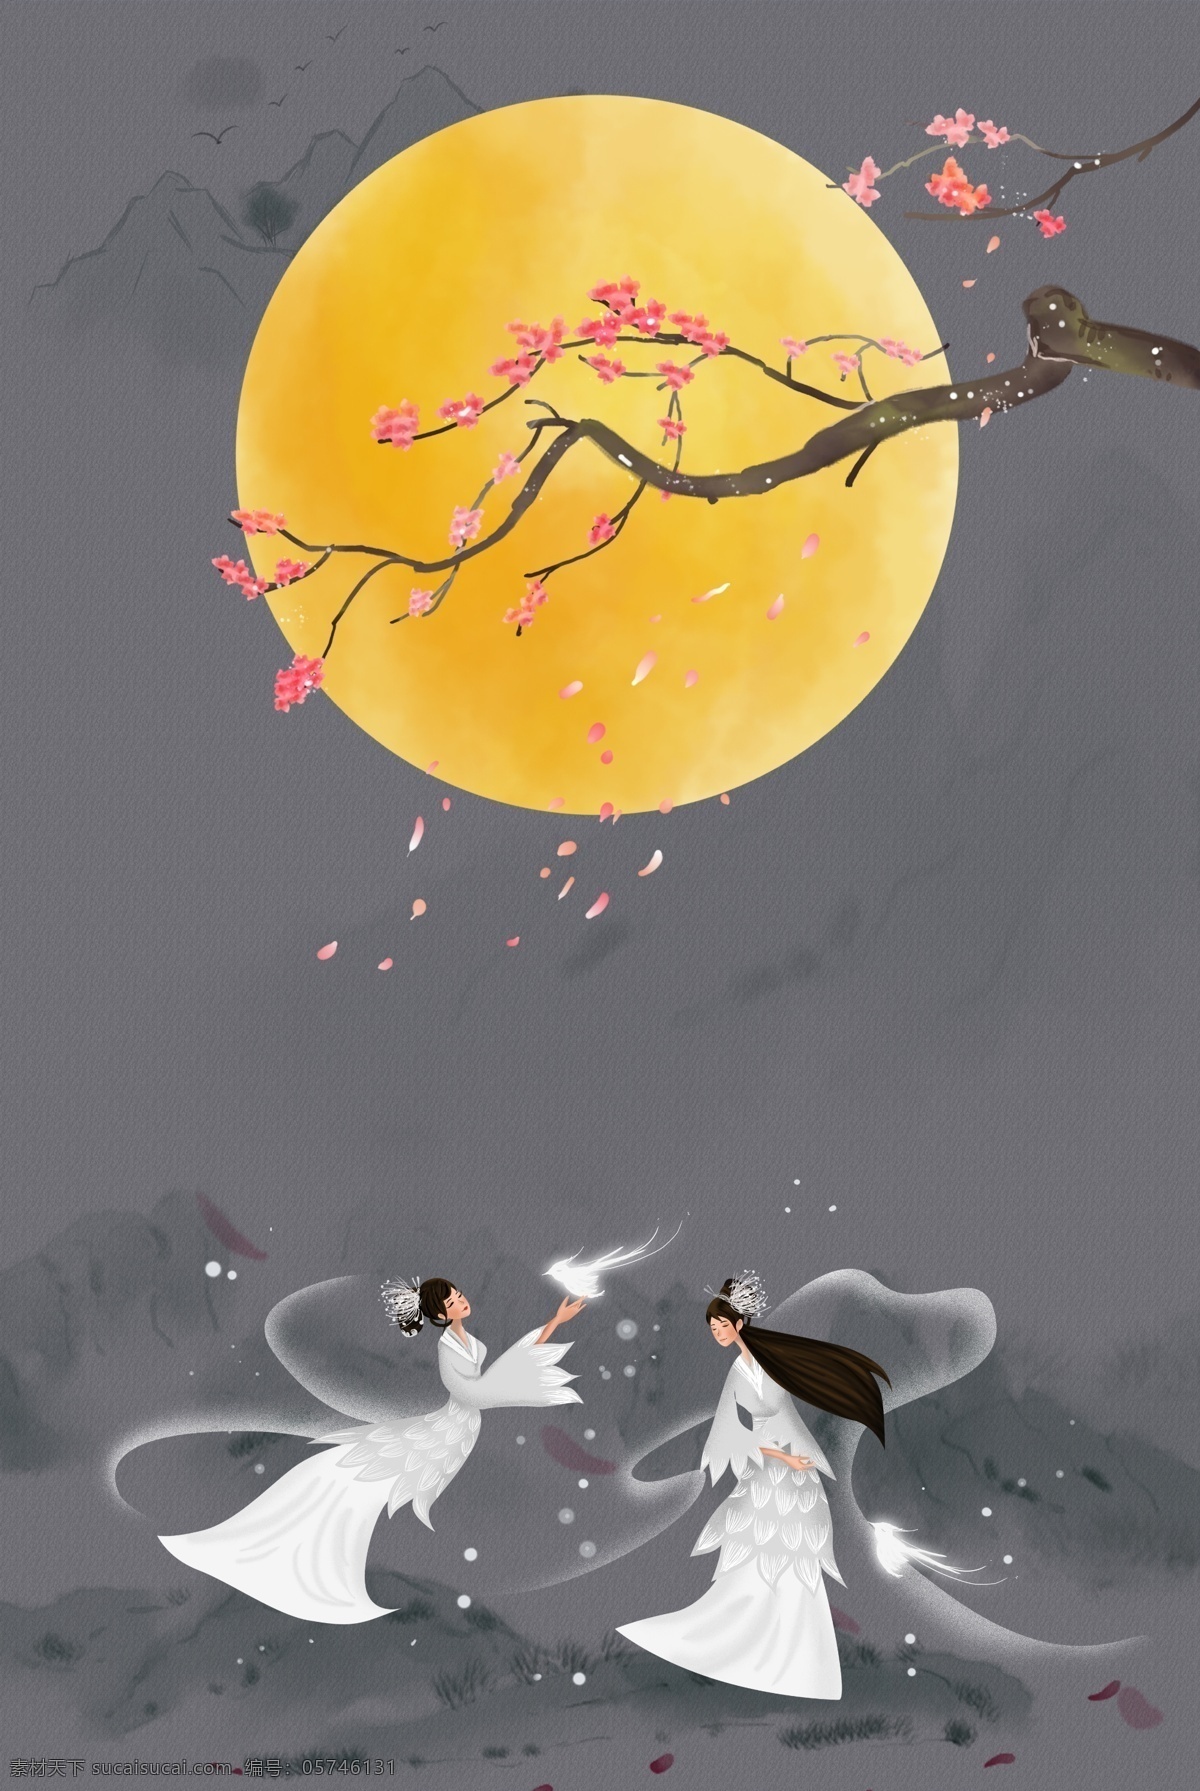 中国 风 仙女 逍遥 游 工笔画 背景 月亮 花枝 山水 水墨 复古 中国风